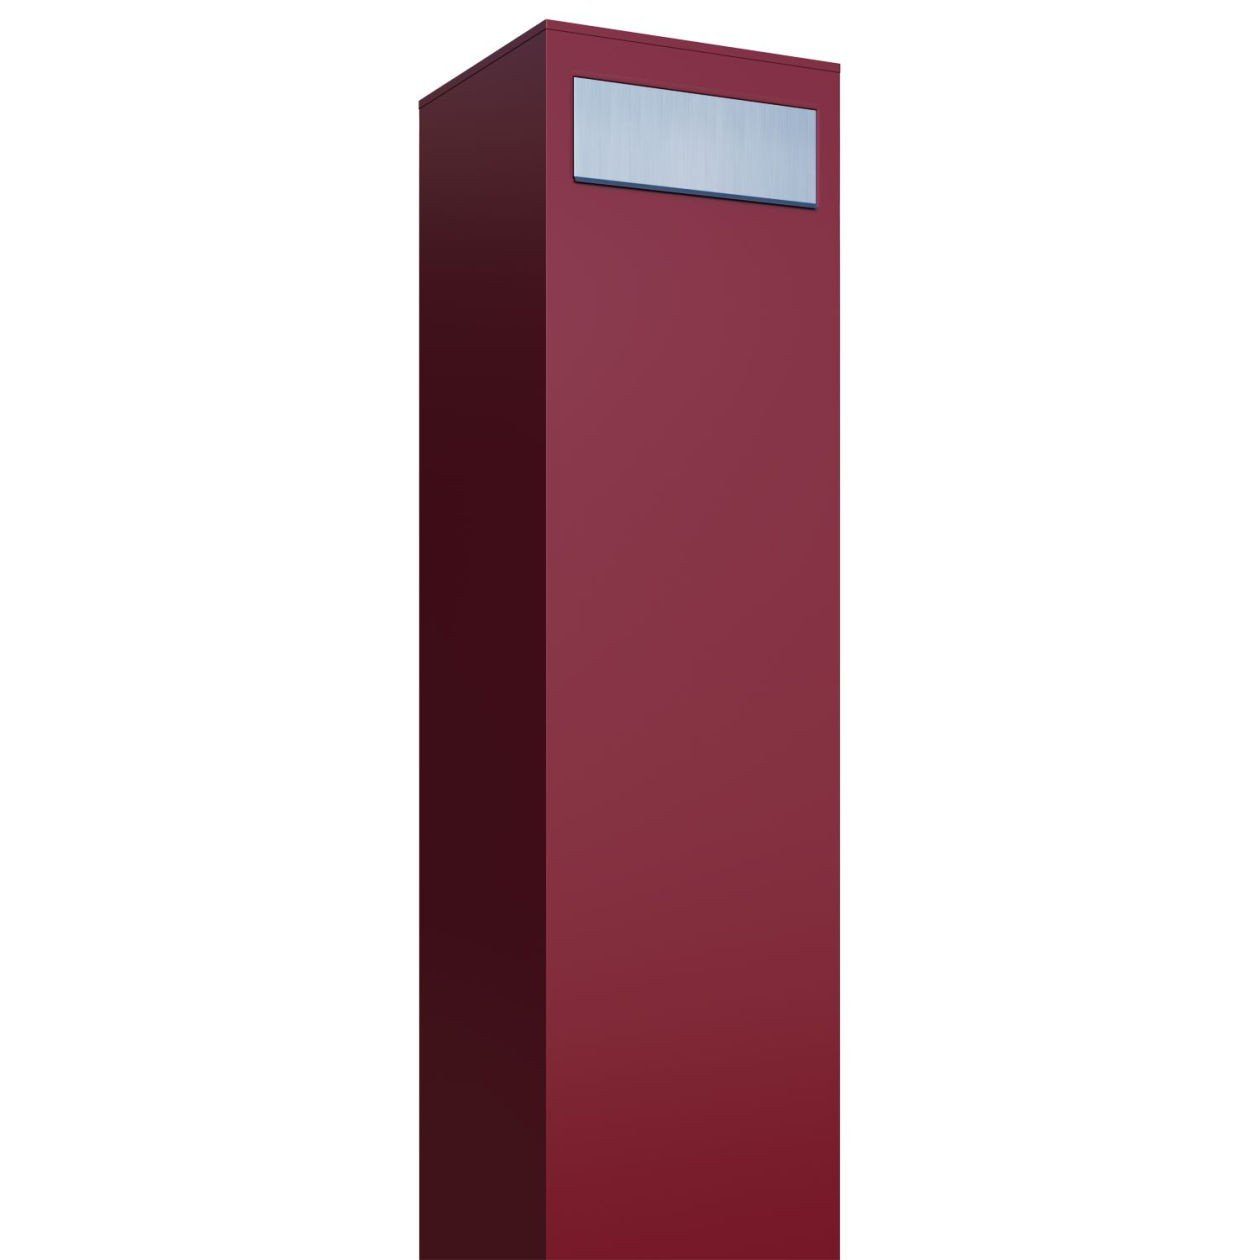 Bravios Briefkasten Standbriefkasten Monolith Rot mit Edelstahlklappe